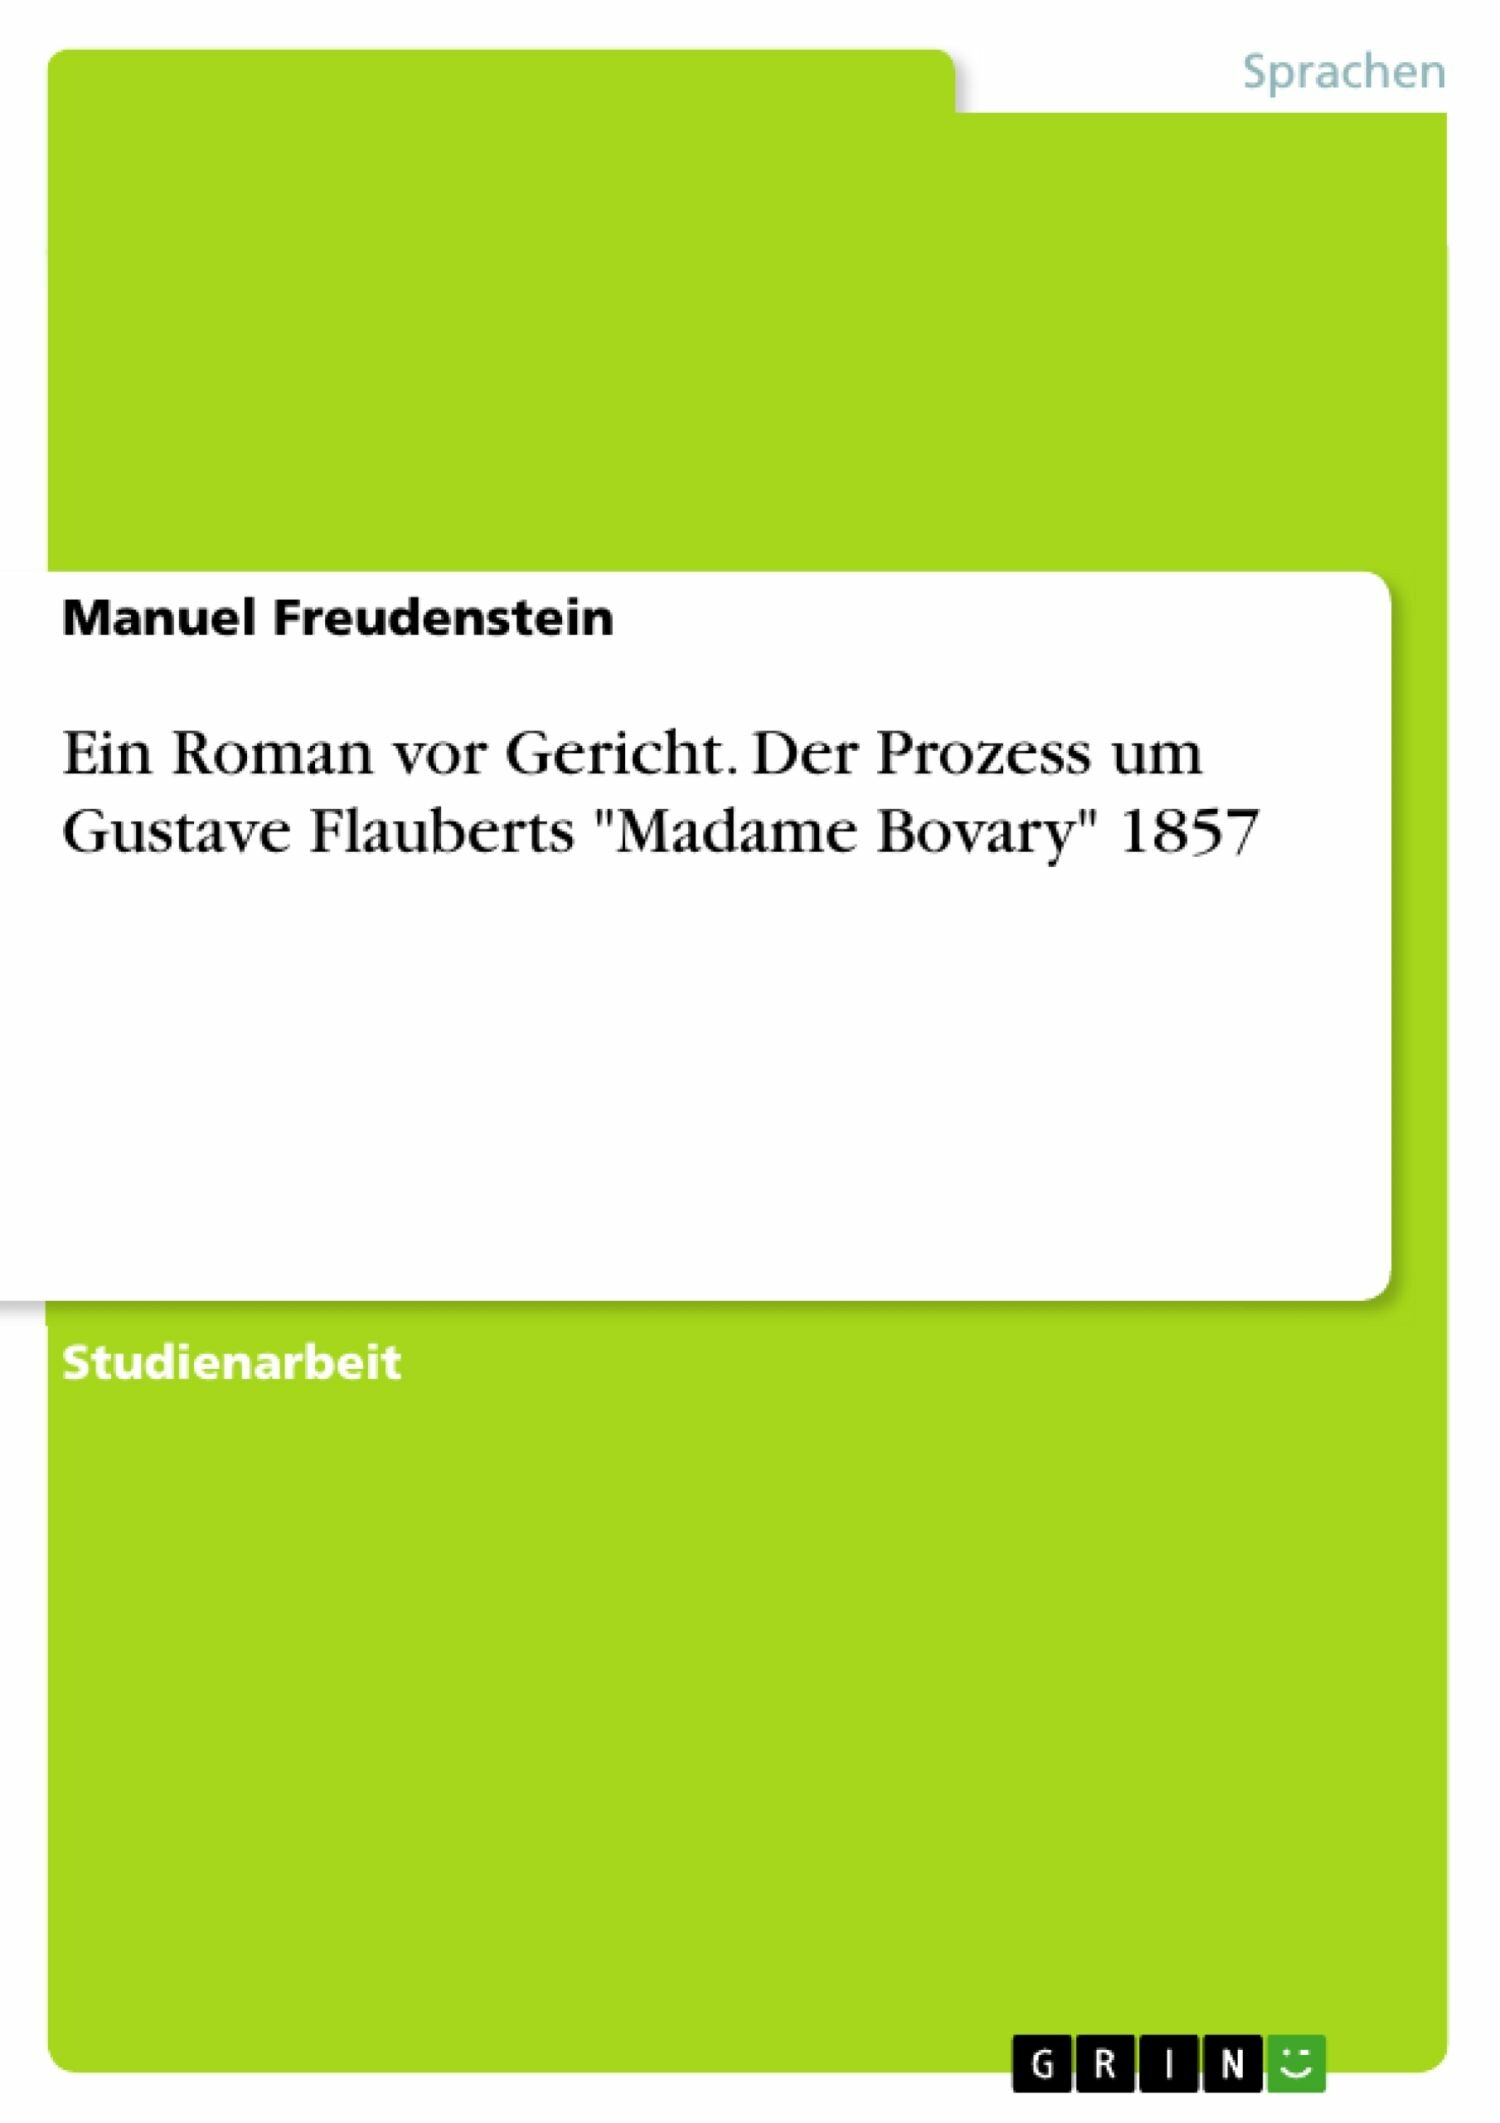 Ein Roman vor Gericht. Der Prozess um Gustave Flauberts 'Madame Bovary' 1857